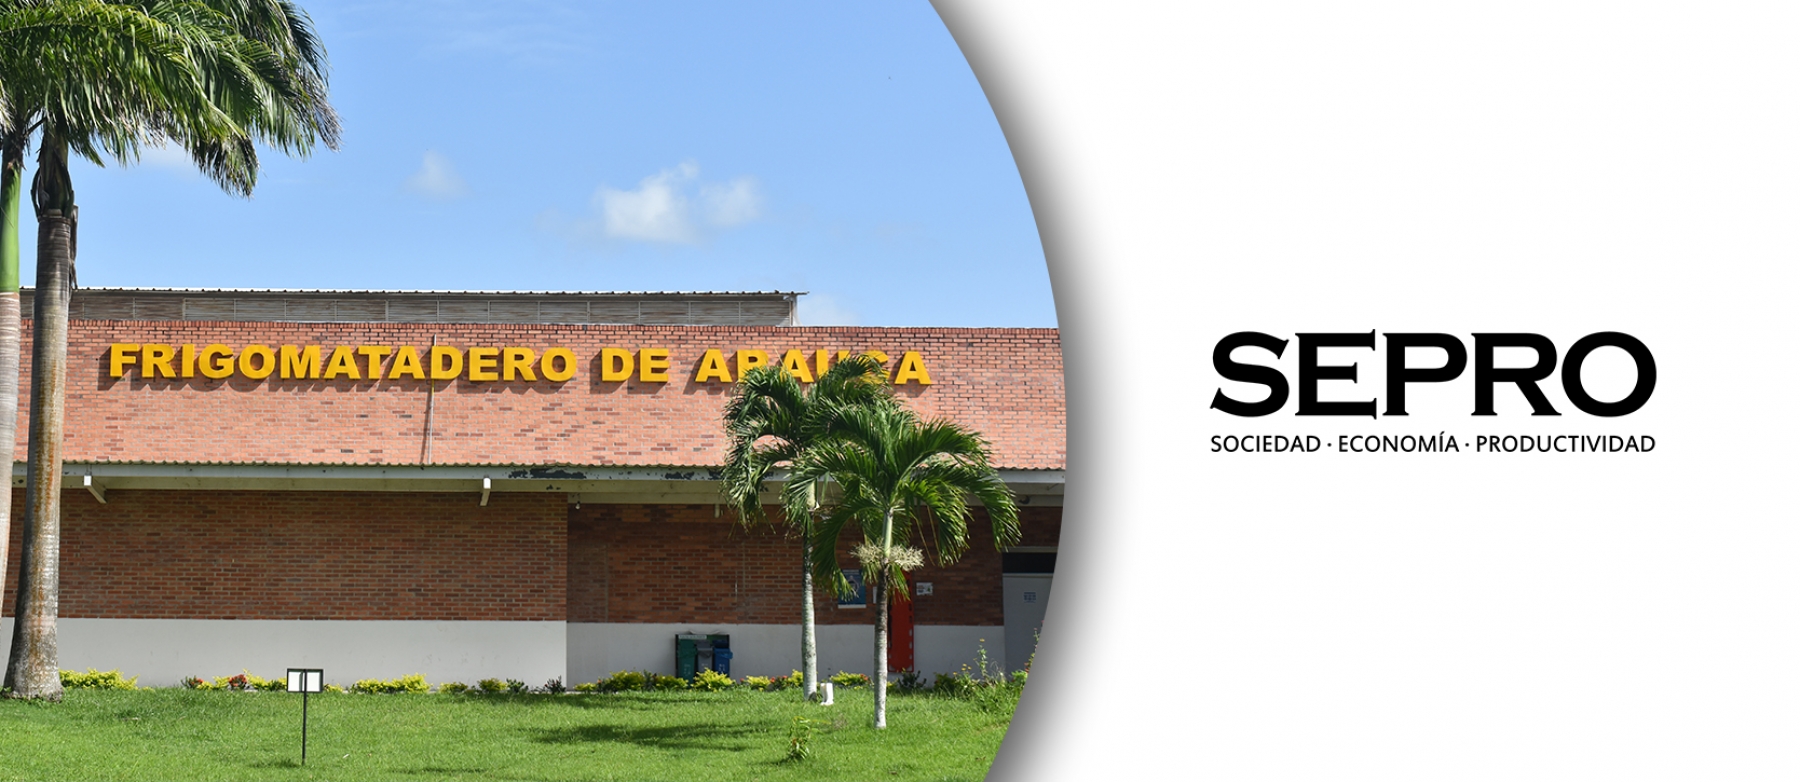 Nuevo proyecto de Sepro busca aprovechar las capacidades instaladas de almacenamiento, distribución y comercialización de productos agropecuarios en Arauca